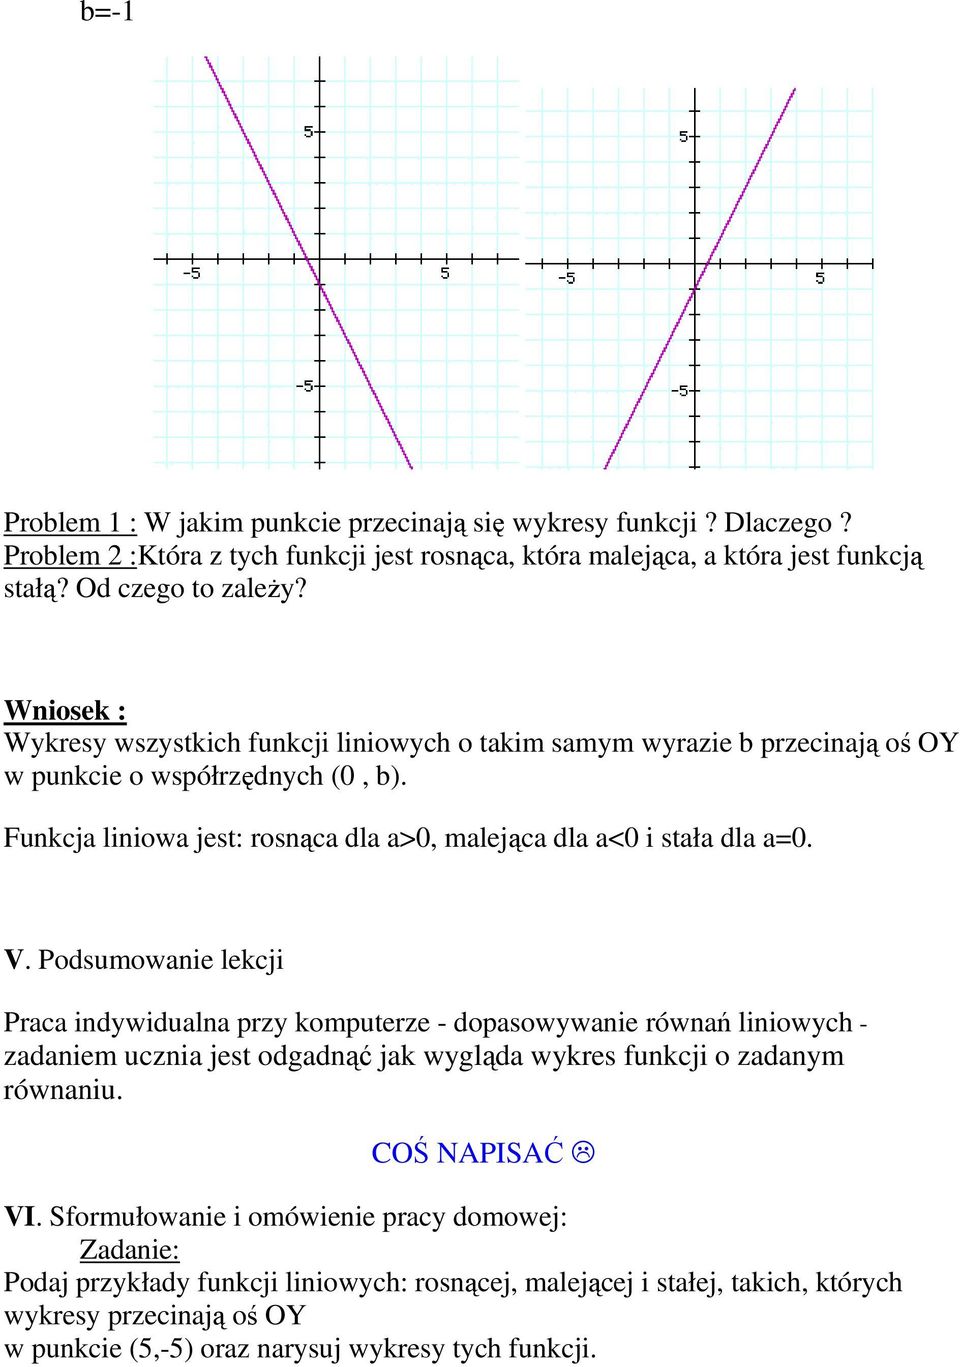 V. Podsumowanie lekcji Praca indywidualna przy komputerze - dopasowywanie równań liniowych - zadaniem ucznia jest odgadnąć jak wygląda wykres funkcji o zadanym równaniu. COŚ NAPISAĆ VI.